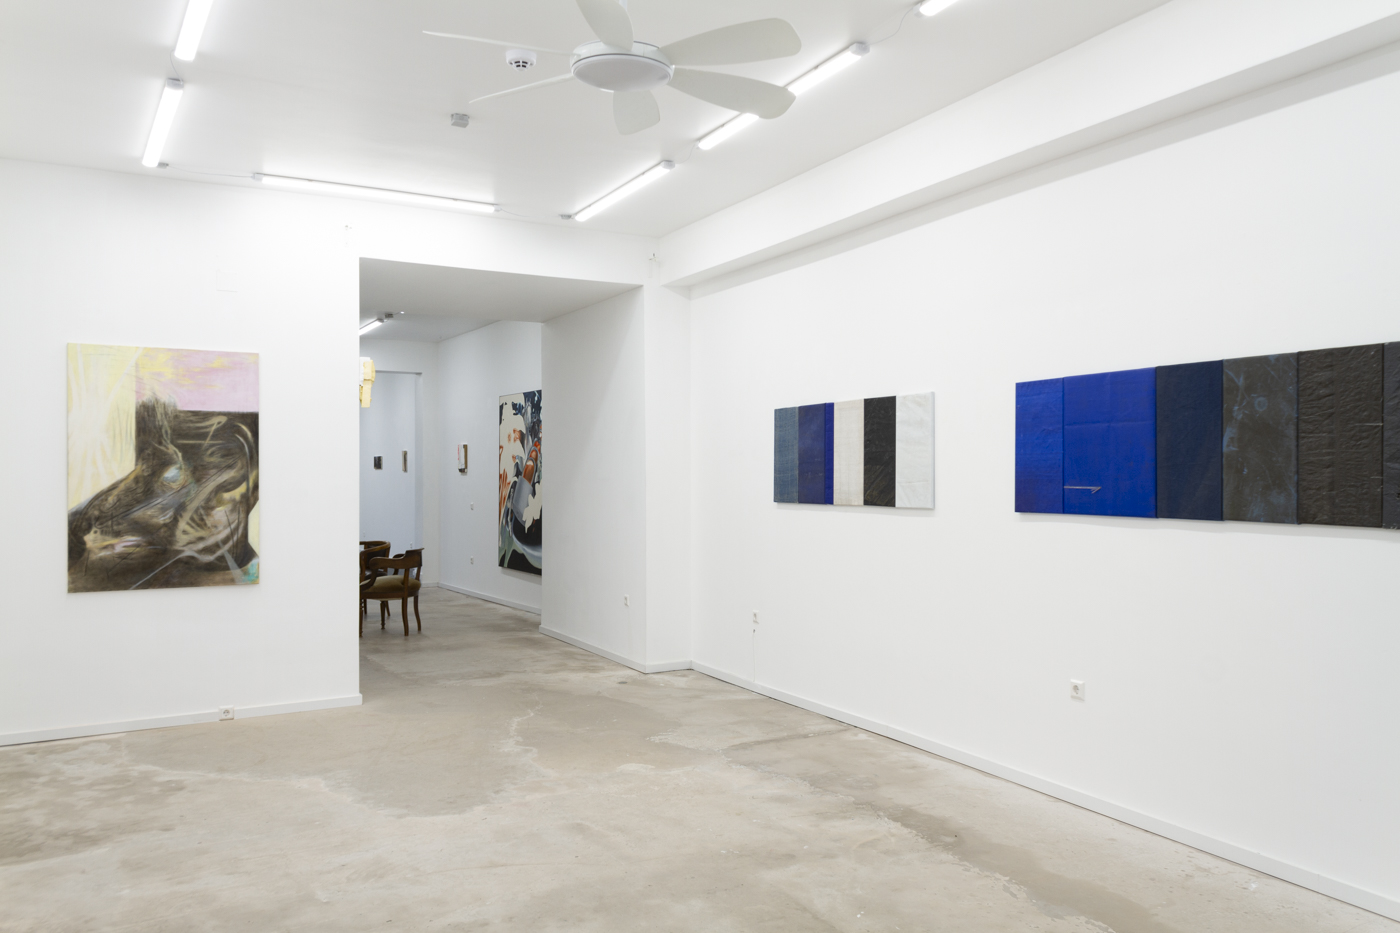 Exhibition Forever after with Julien Hbsch, Kolja  Krtner Sainz , Minh  Phuong Nguyen at Reuter Bausch Art Gallery